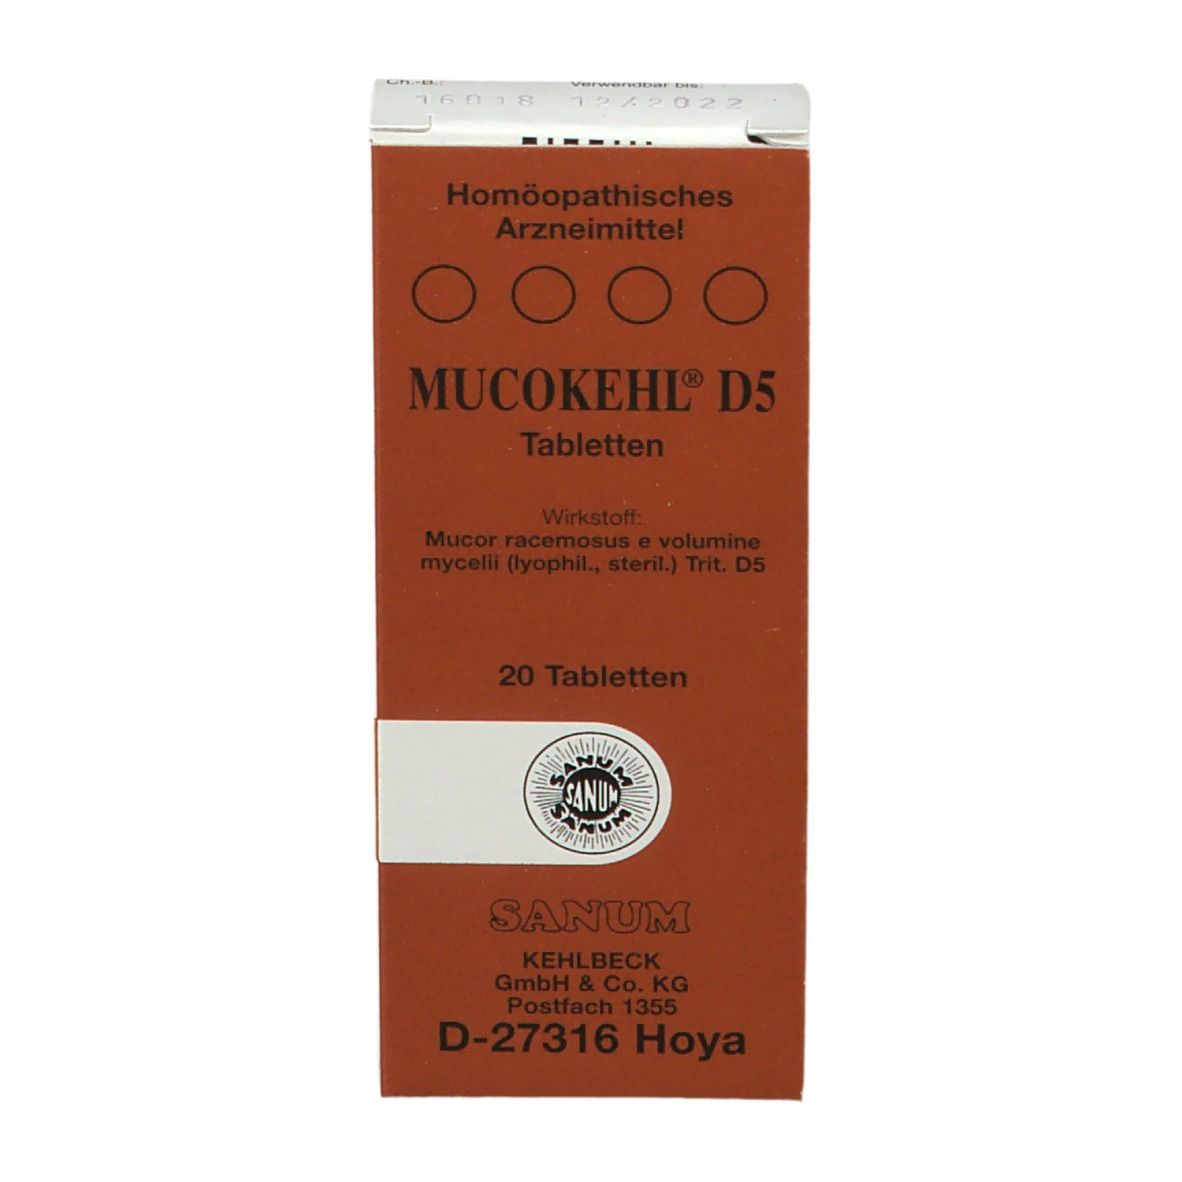 Mucokehl® D5 Tabletten